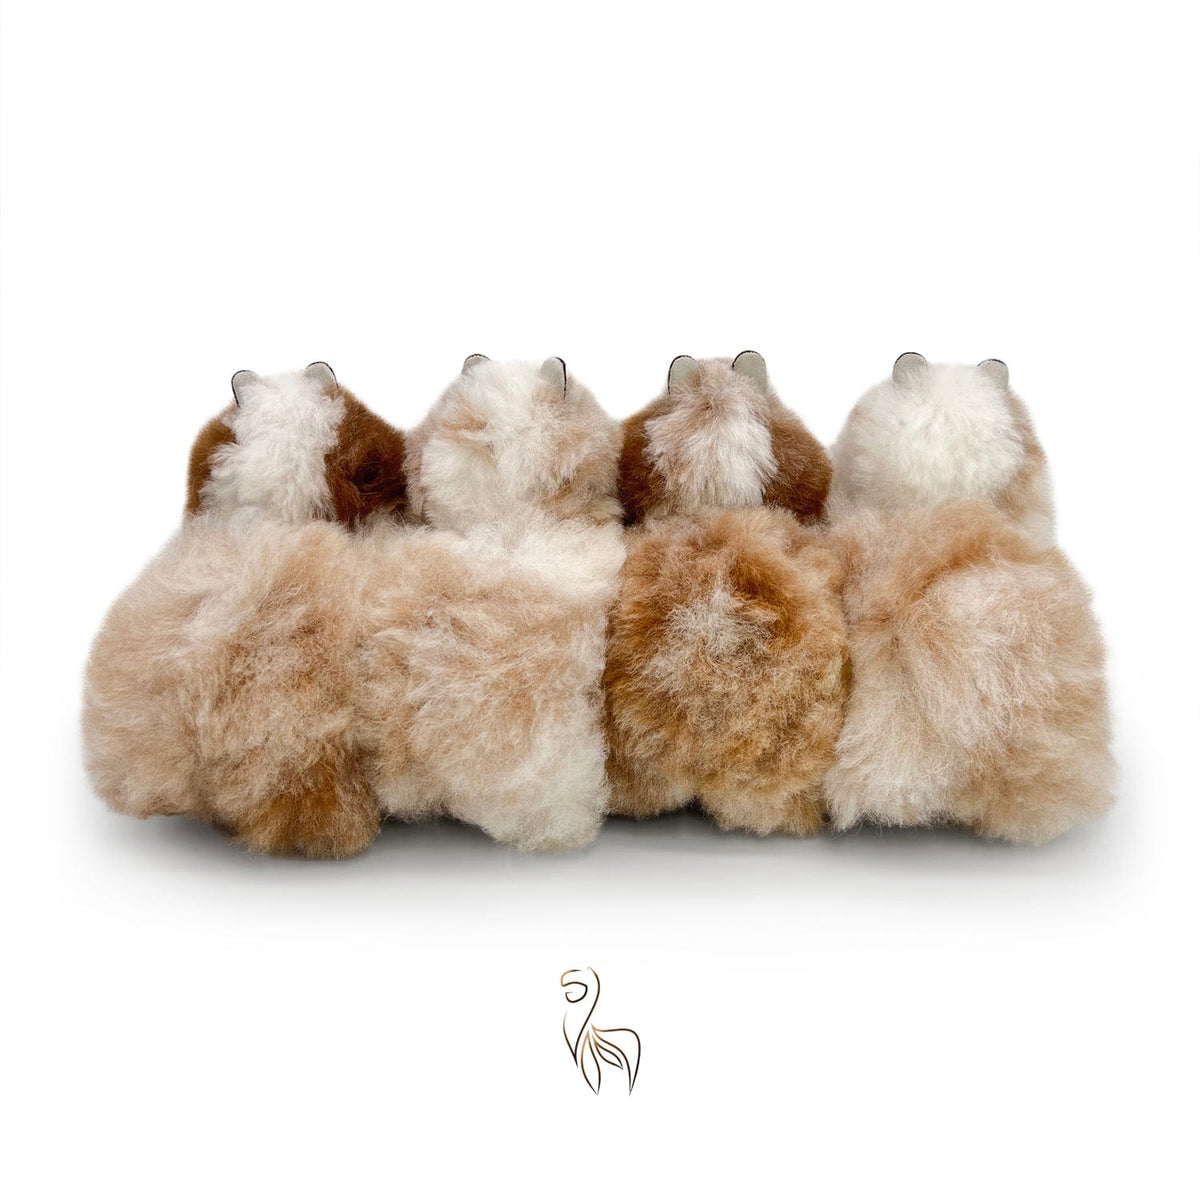 Sneeuwluipaard - Klein alpacaspeelgoed (23 cm) - Beperkte editie